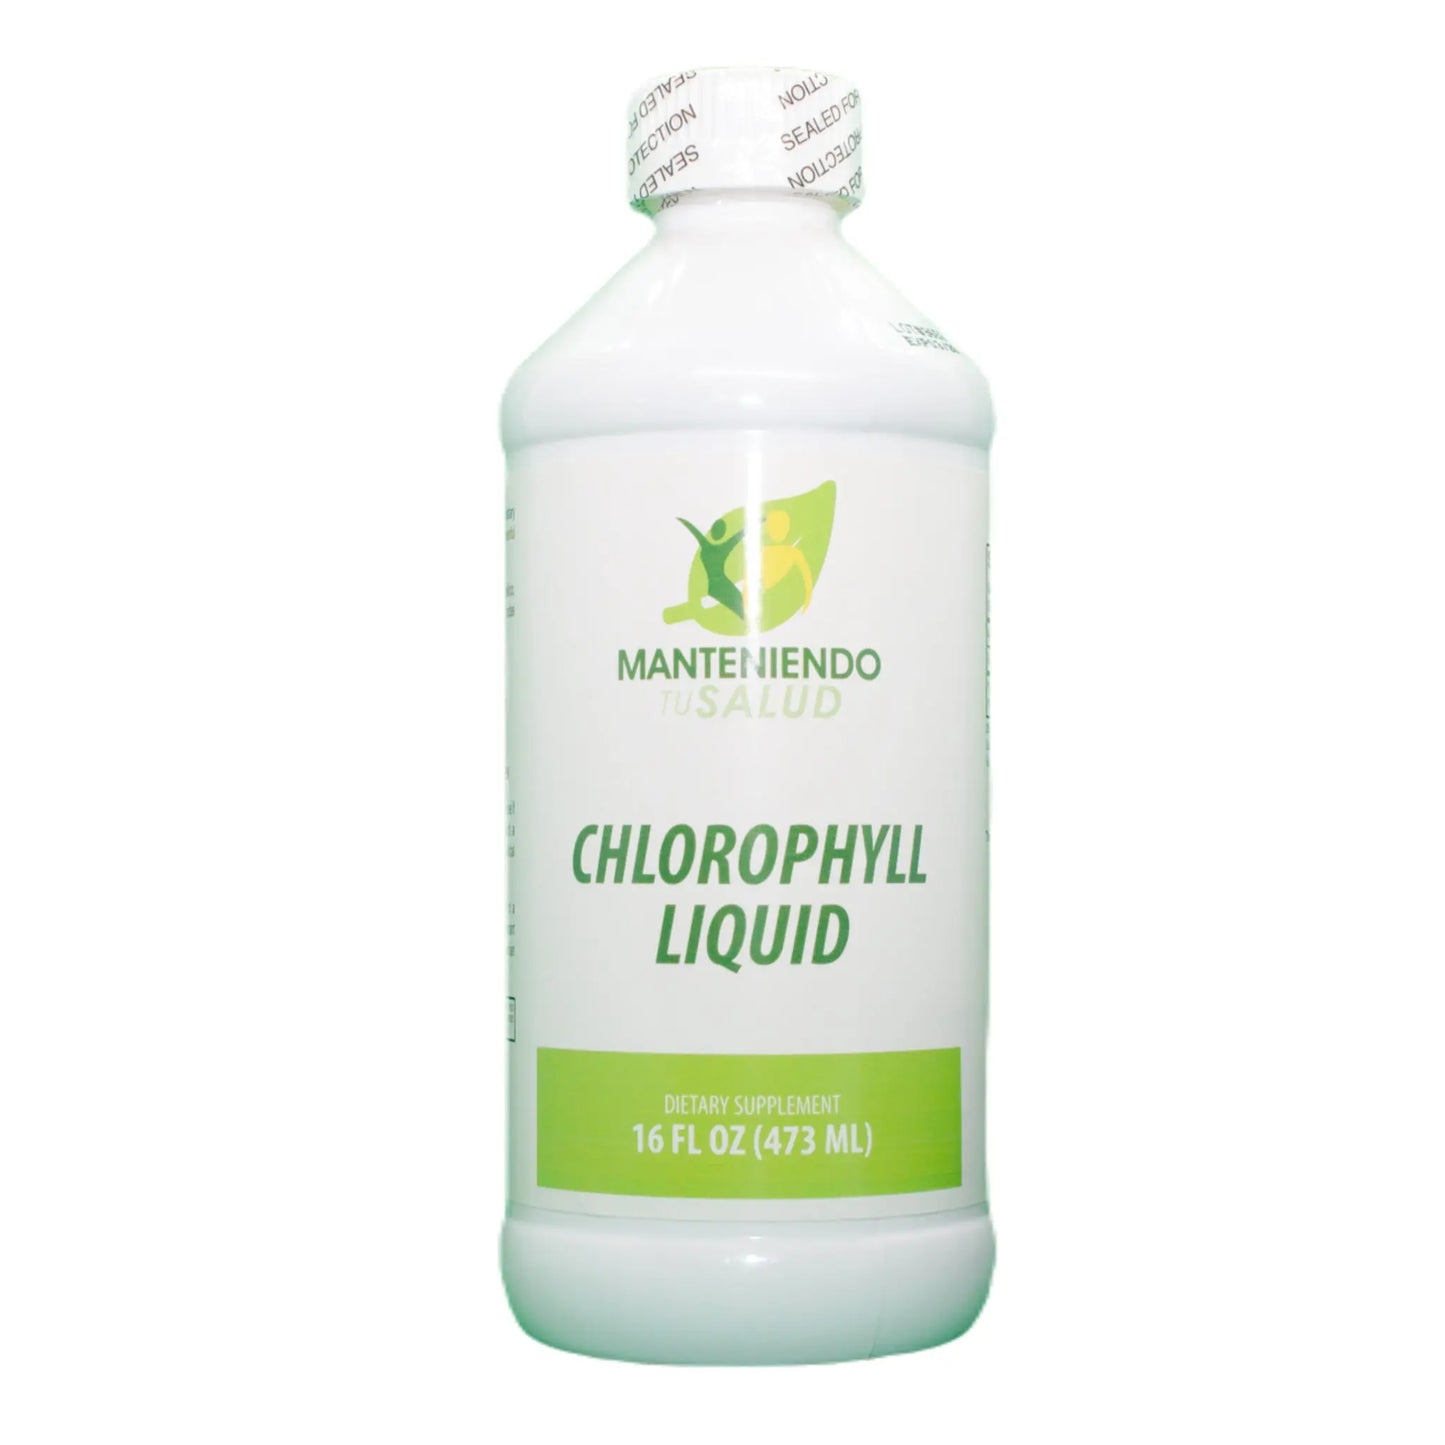 Chlorophyll Liquid, 16oz Manteniendo Tu Salud